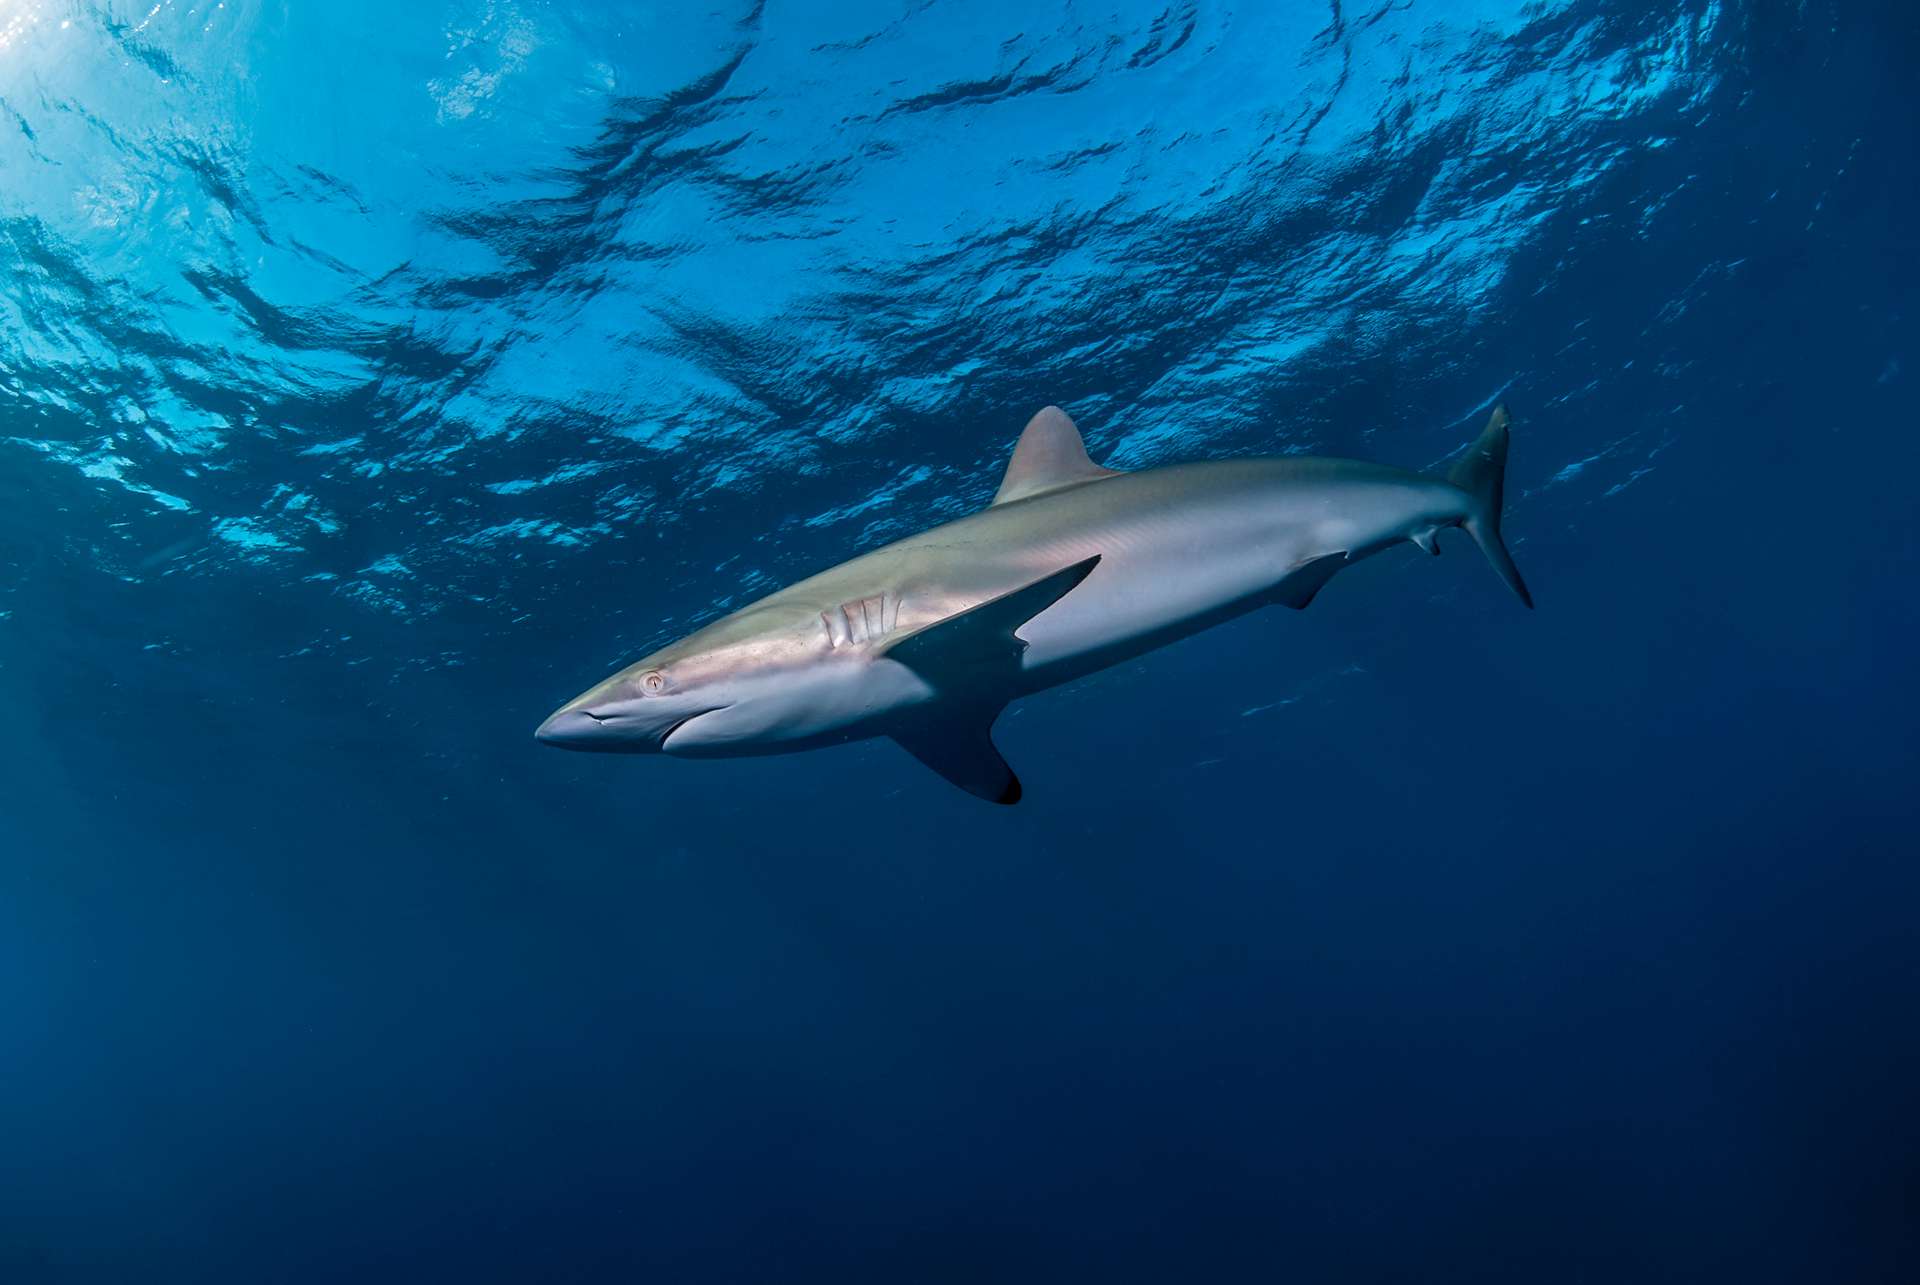 Exceptionnel : ce requin a régénéré sa nageoire dorsale découpée par des humains !